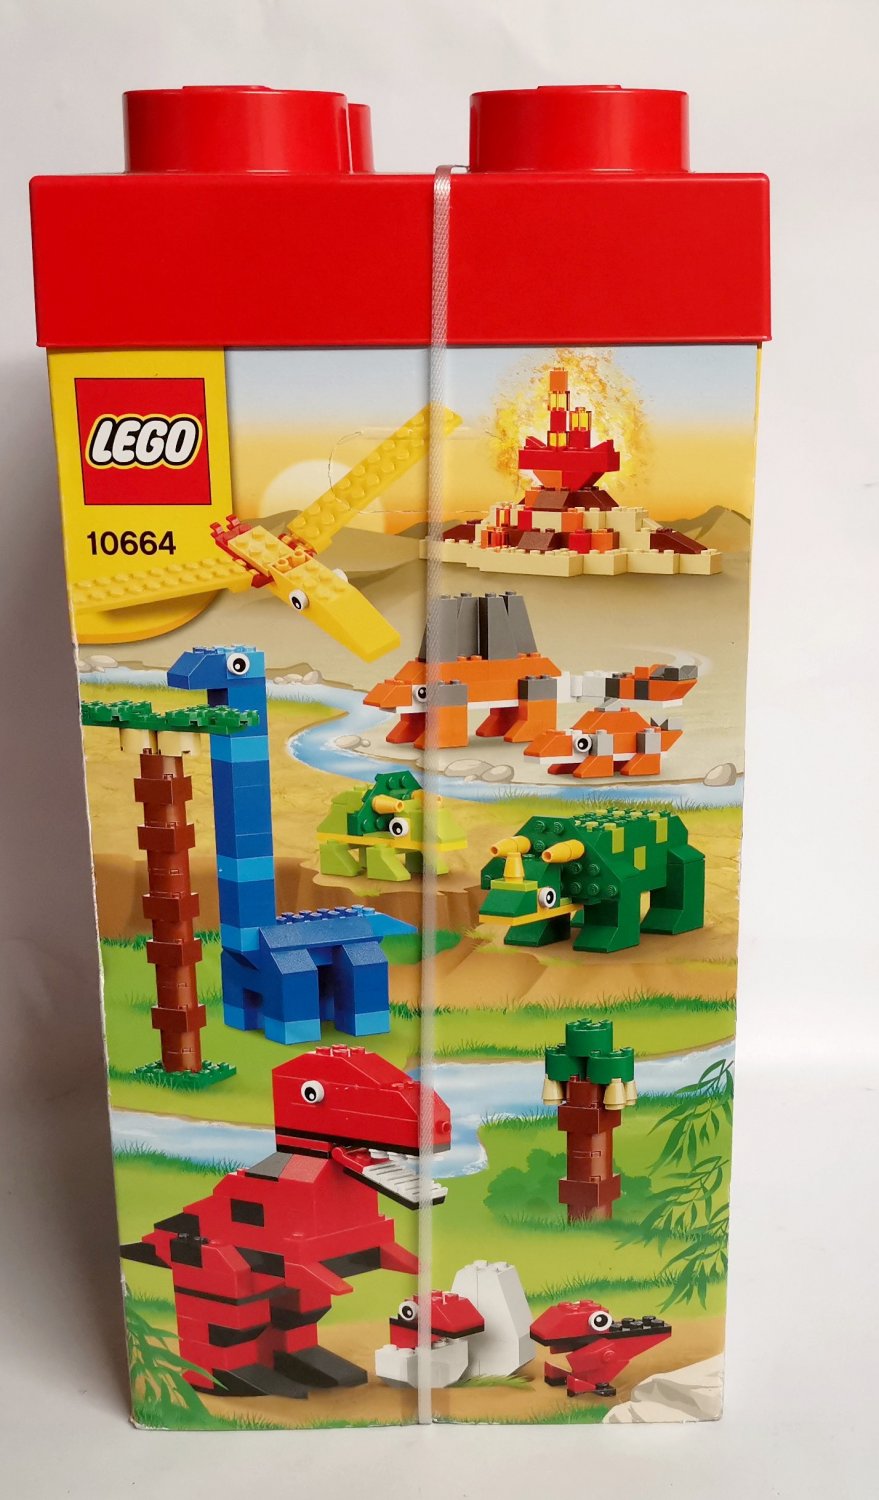 LEGO 10664 Kreativ-Turm NEU“ – neu – A02nkprF41ZZJ